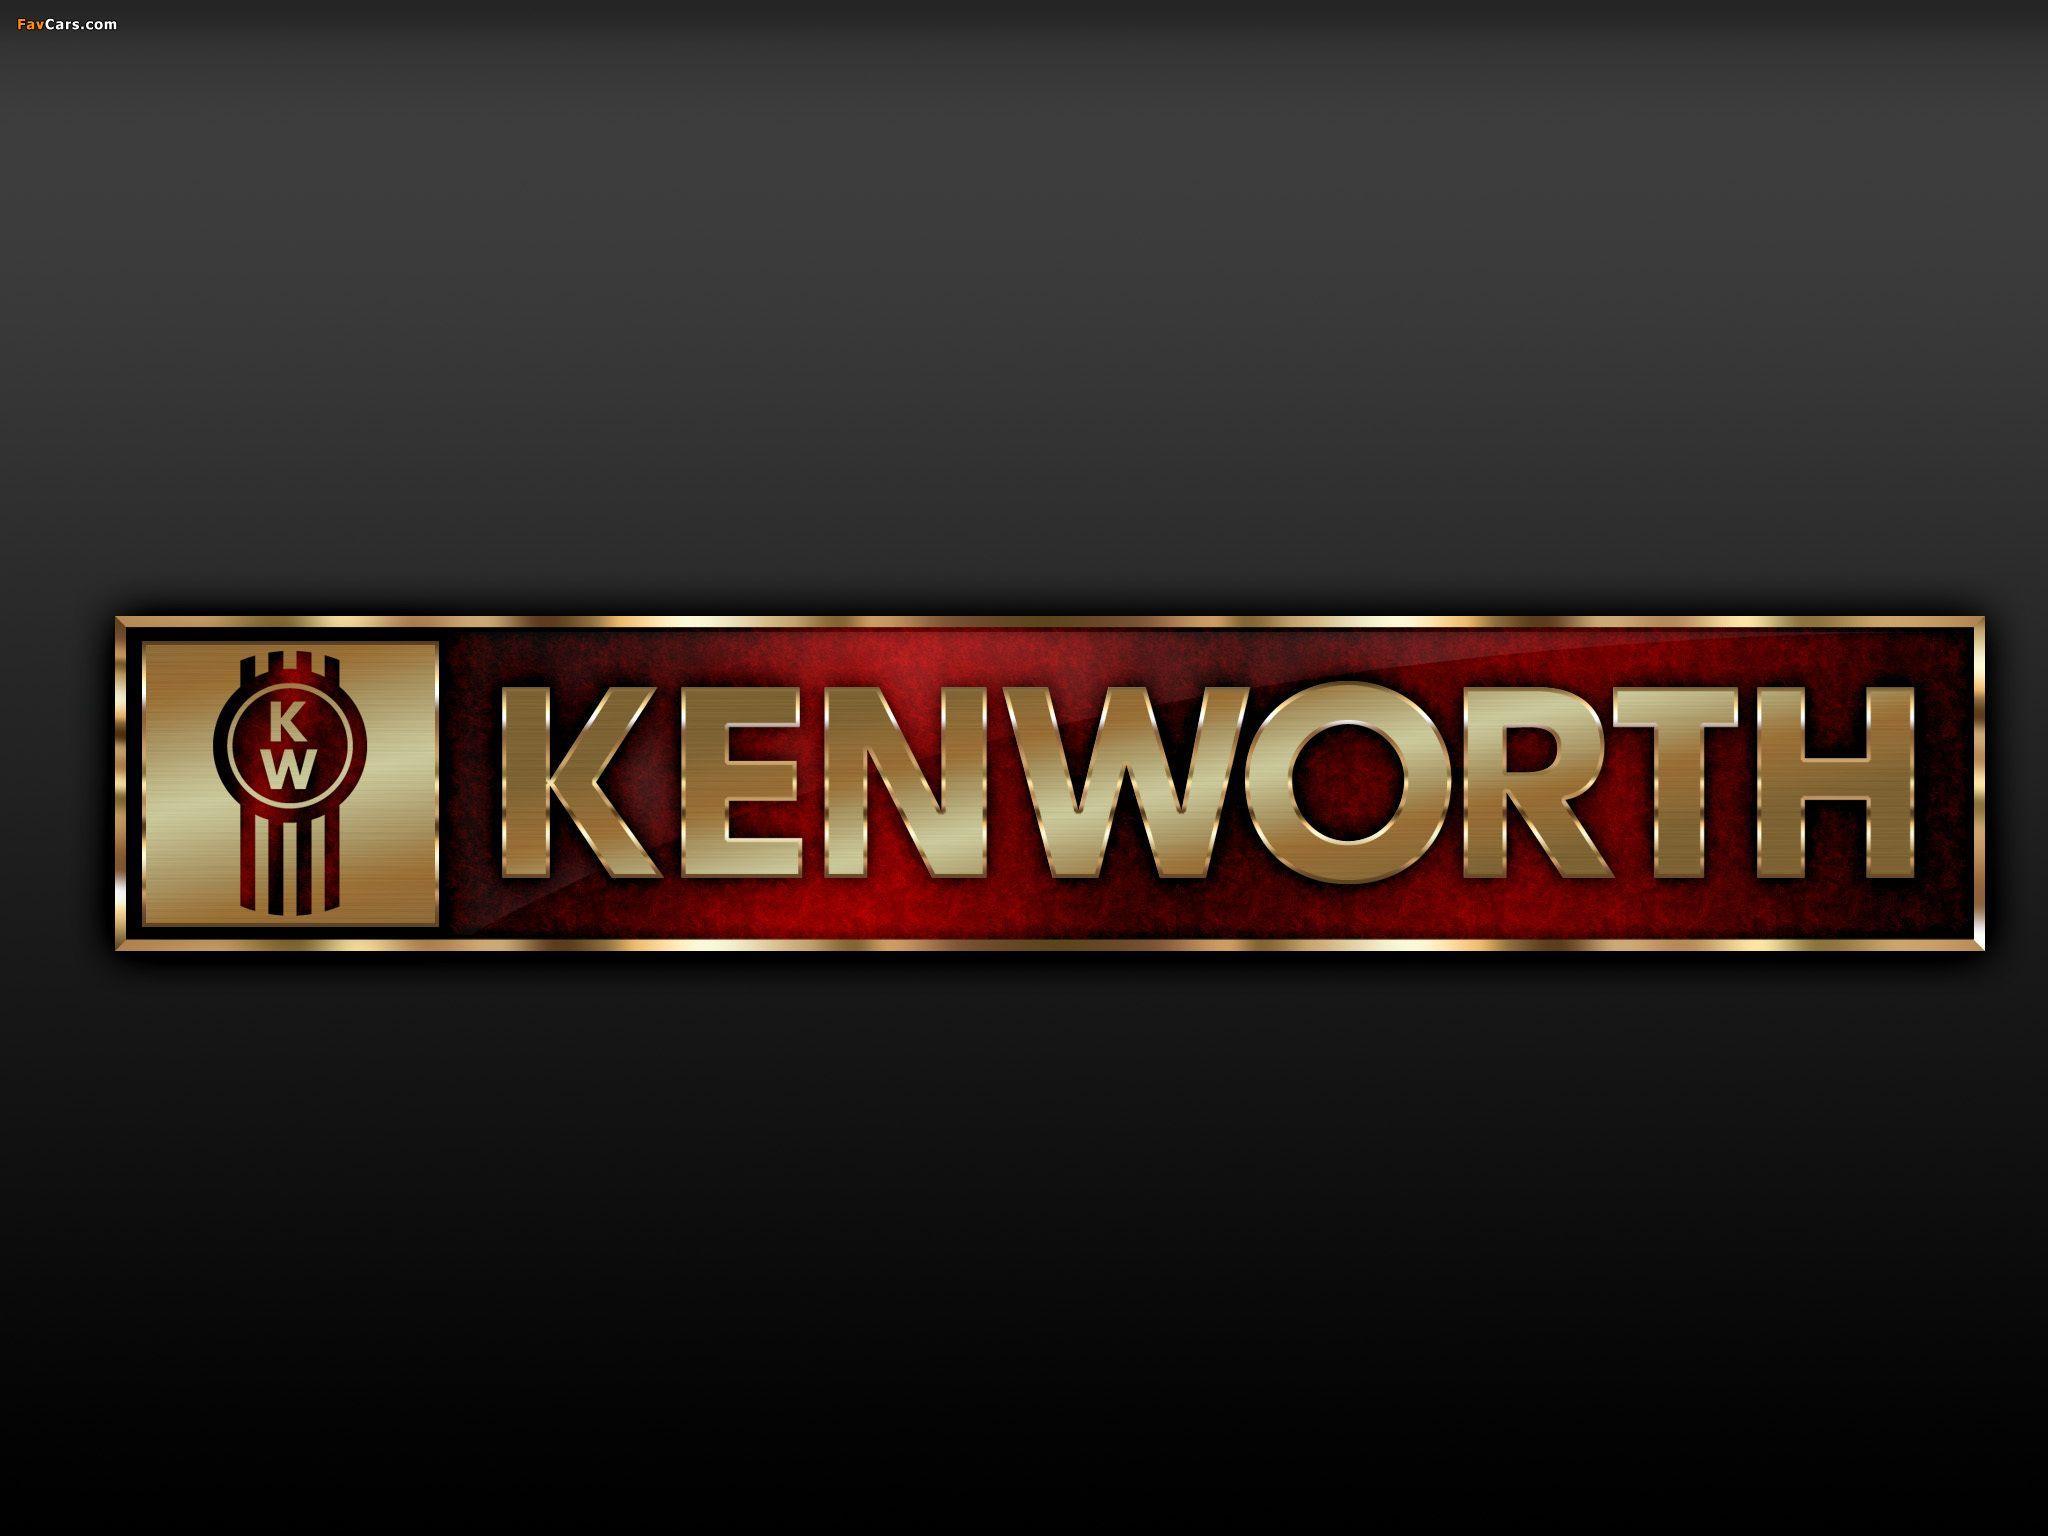 Bạn đang tìm kiếm hình nền máy tính đầy sức mạnh? Hãy thử xem những hình nền Kenworth siêu đẹp với hiệu suất cao. Với một chiếc máy tính Kenworth đầy mạnh mẽ trên desktop của bạn, bạn sẽ cảm thấy rất tự tin trong công việc hàng ngày. Nhấp vào hình ảnh liên quan đến từ khóa để tải về và cập nhật cho desktop của mình ngay hôm nay!